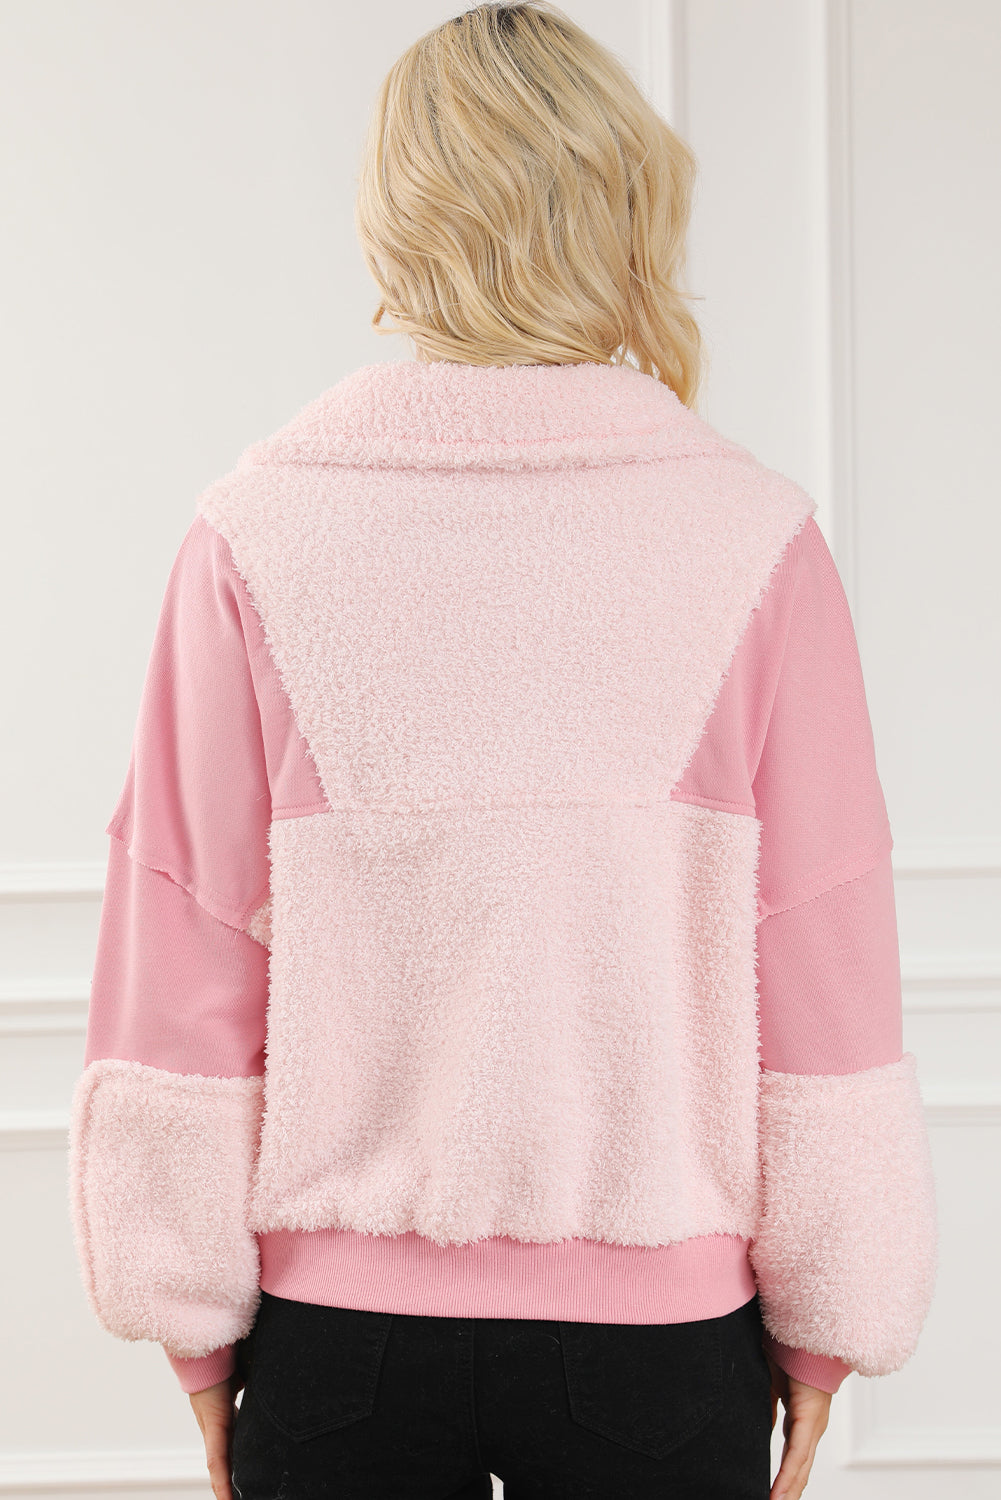 Rosafarbenes, flauschiges Patchwork-Sweatshirt mit freiliegenden Nähten und Reißverschluss am Hals